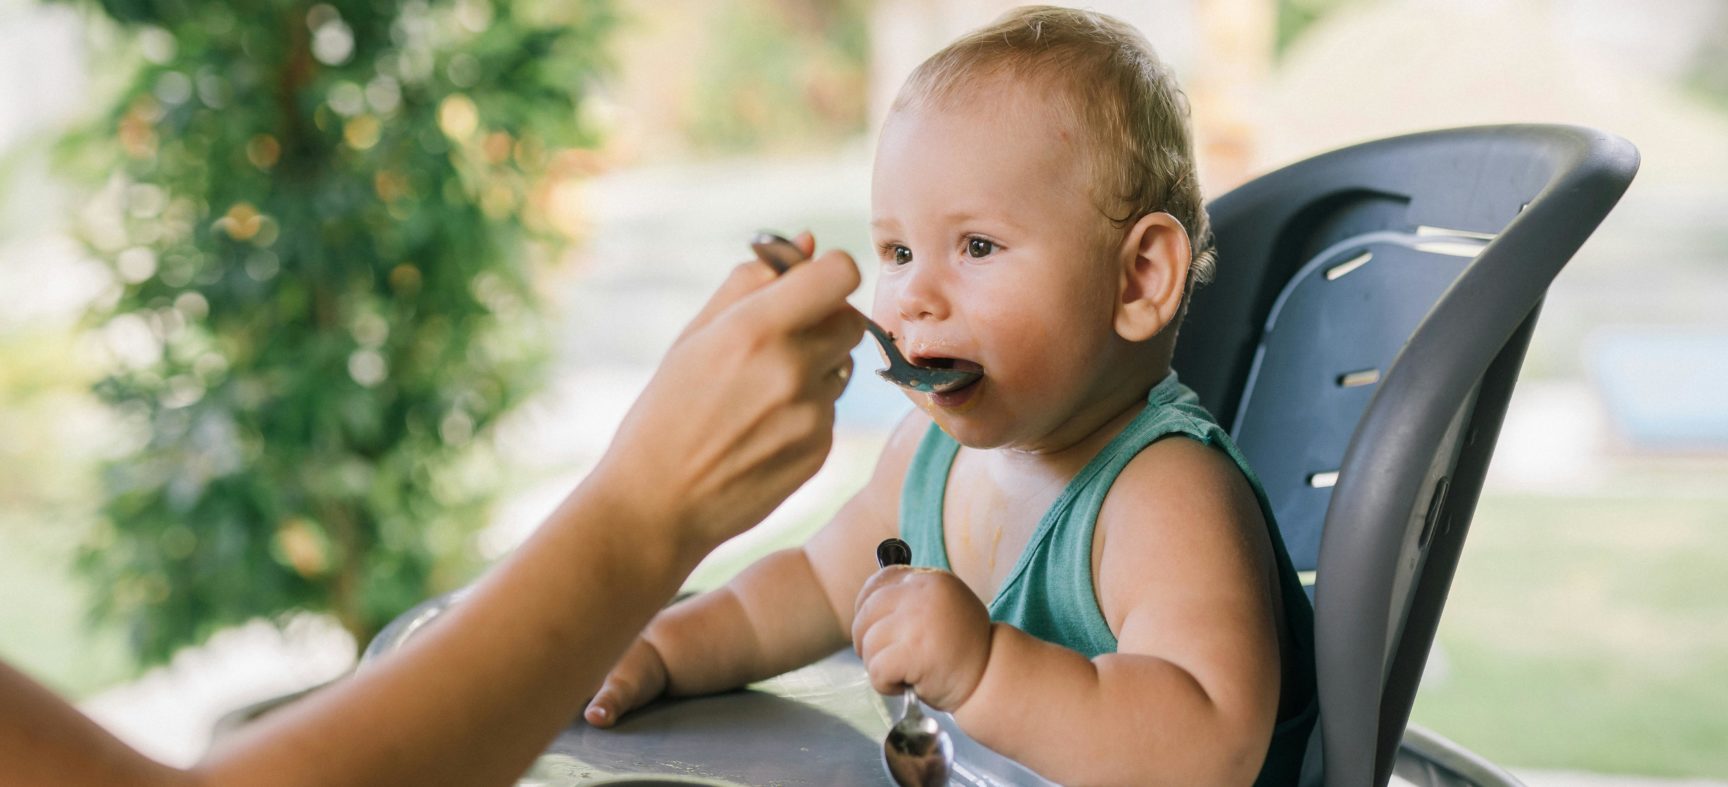 Alimentação infantil: principais dificuldades alimentares de bebês